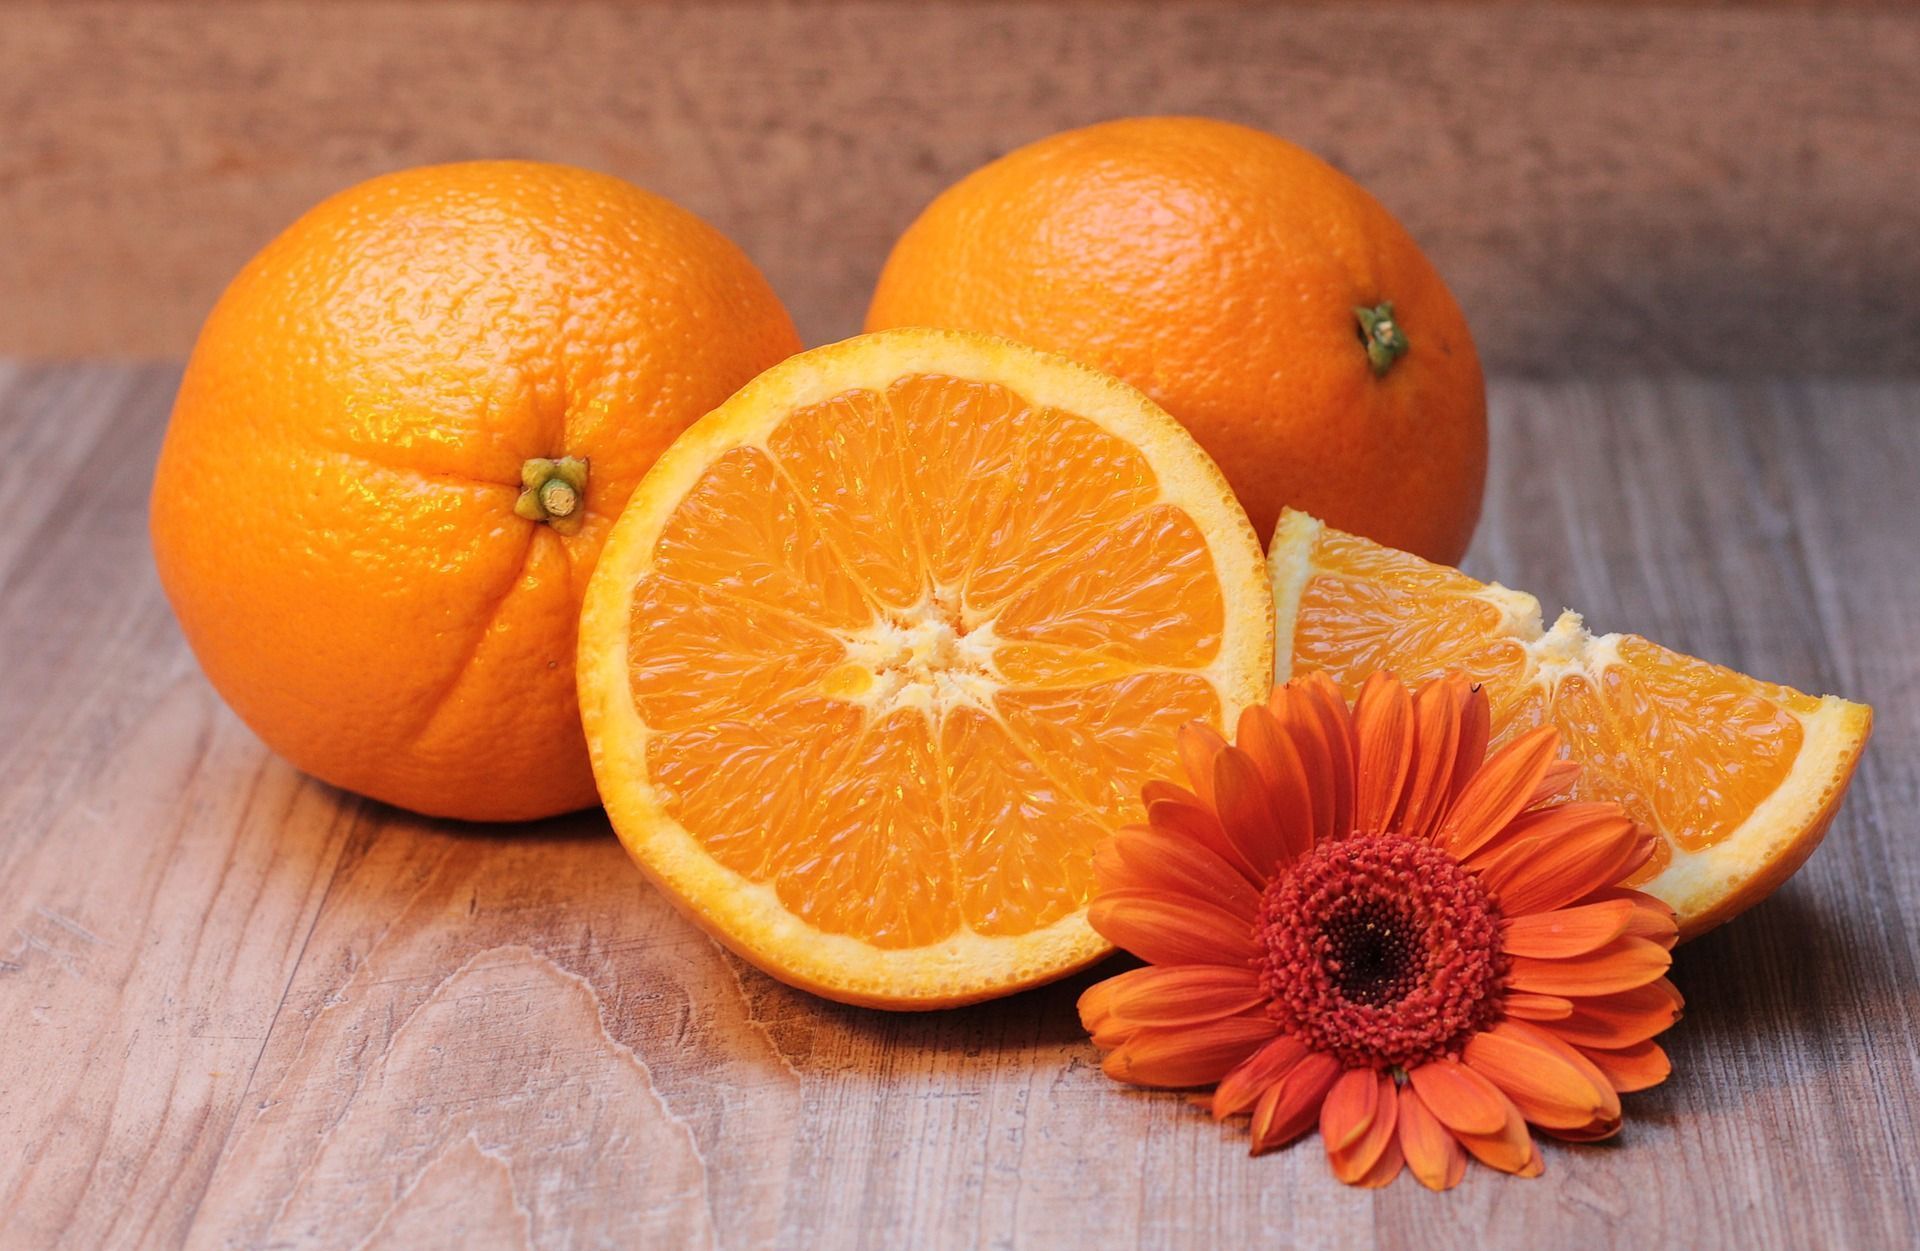 oranges 1995056 1920 1